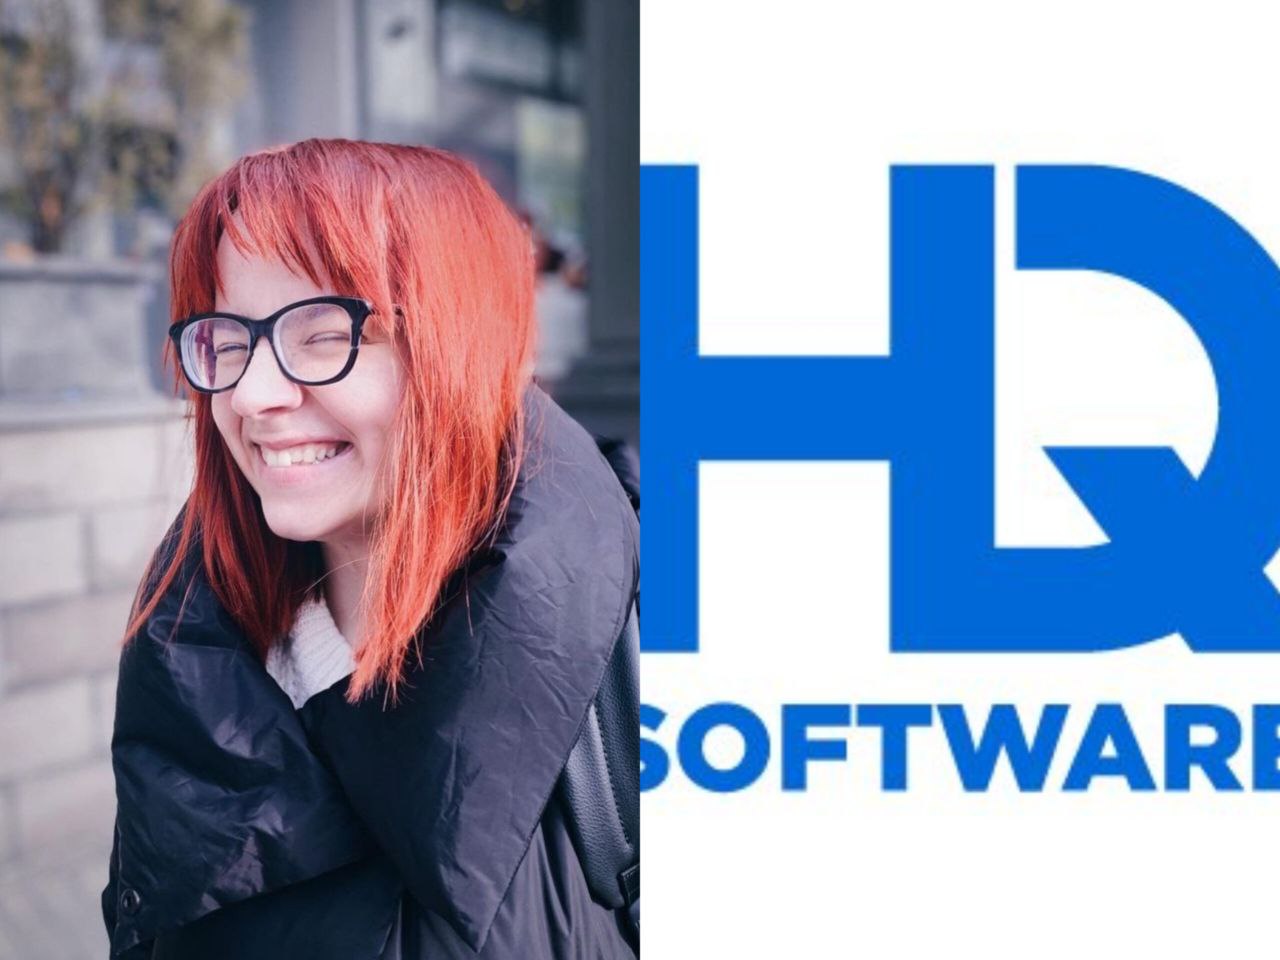 Компанию HQSoftware в соцсетях винят в смерти сотрудницы. Здоровье девушки пошатнулось от стресса